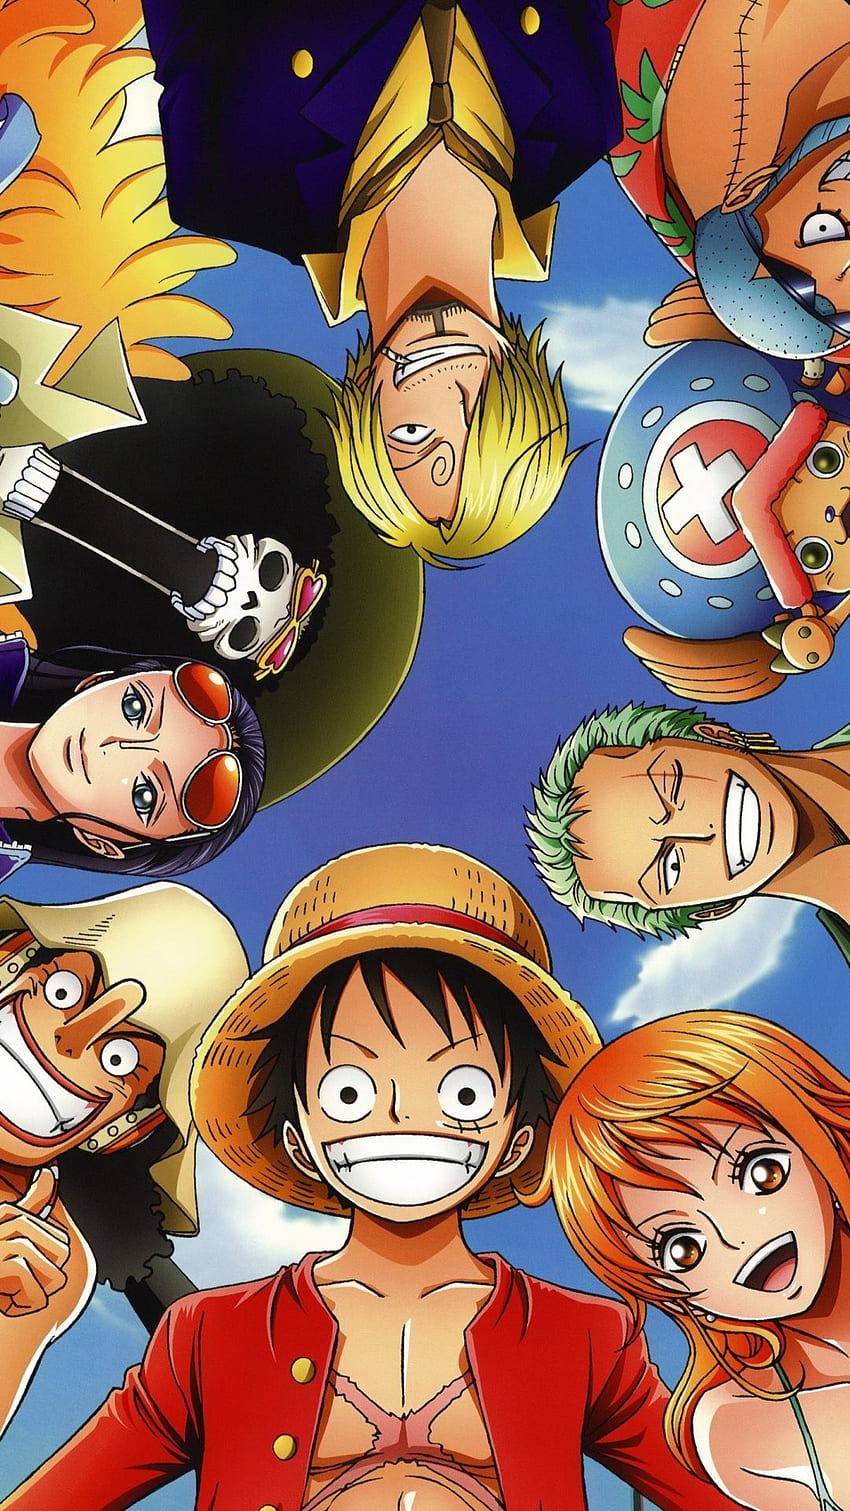 Những fan của anime hẳn sẽ không bao giờ bỏ lỡ Anime One Piece nổi tiếng toàn cầu. Được yêu thích bởi hoạt hình độc đáo và cốt truyện hấp dẫn, đây là một trong những bộ anime thu hút nhiều lượt xem nhất. Hãy bắt đầu cuộc phiêu lưu trong thế giới đầy màu sắc này bằng cách xem Anime One Piece ngay hôm nay!